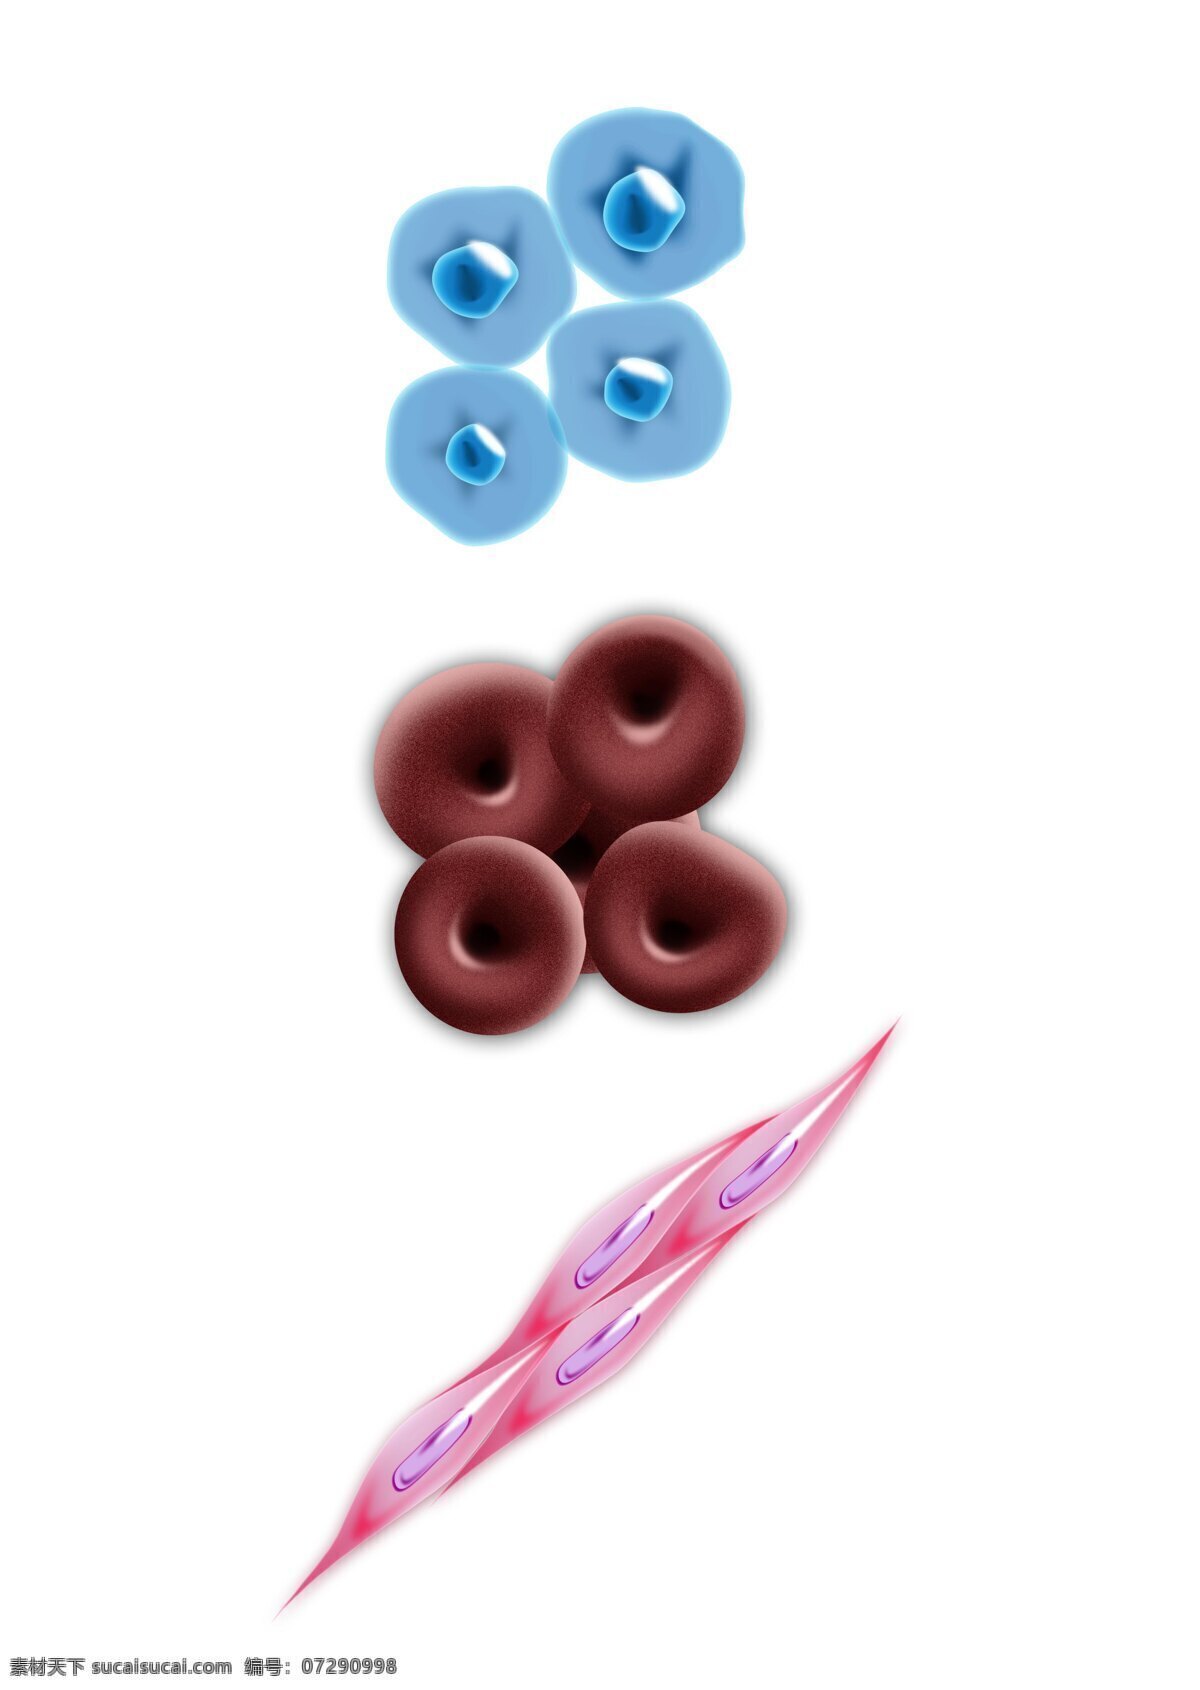 款 半 写实 细胞 分层 图 随意 编辑 生物 表皮 医生 显微镜 人体 血液 肌肉细胞 红细胞 血细胞 治疗 生活百科 医疗保健